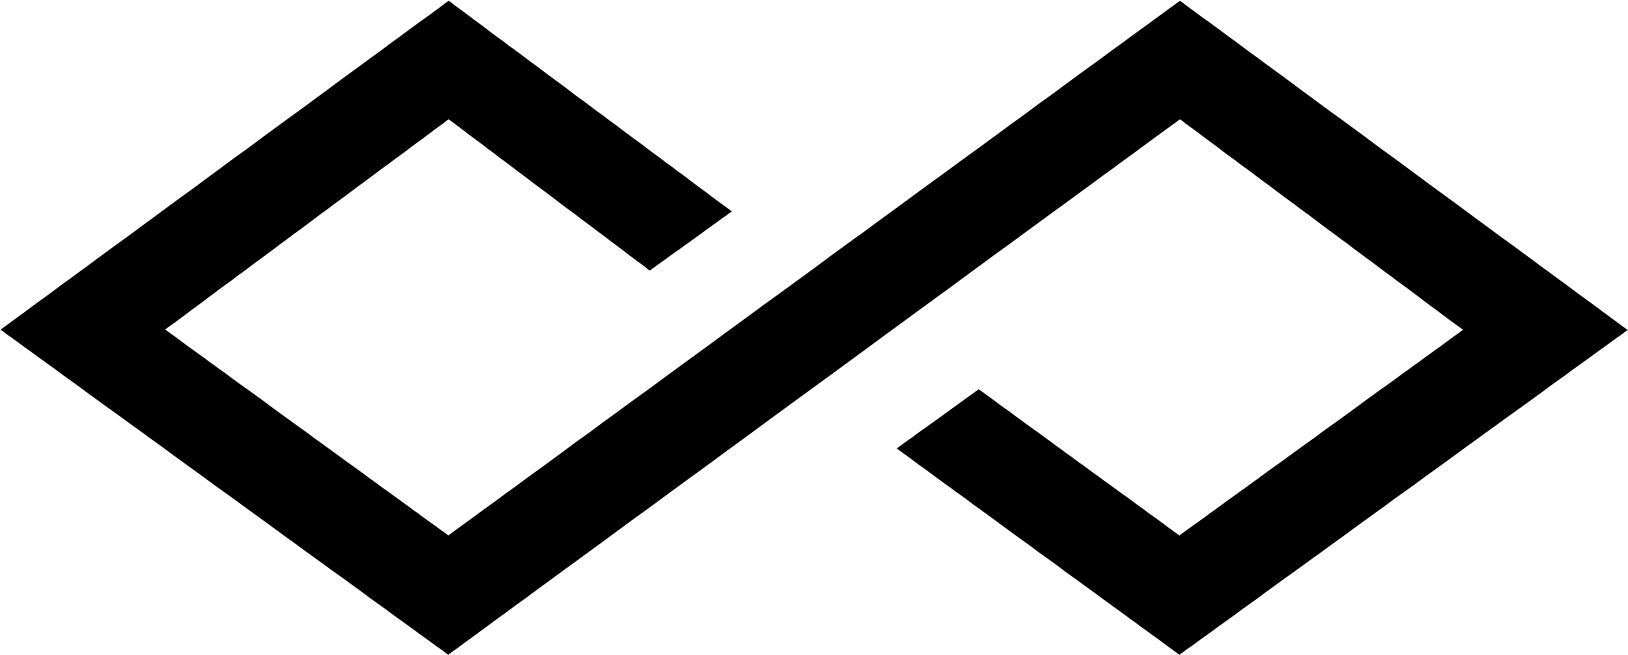 Simon Property Group logo (PNG transparent)